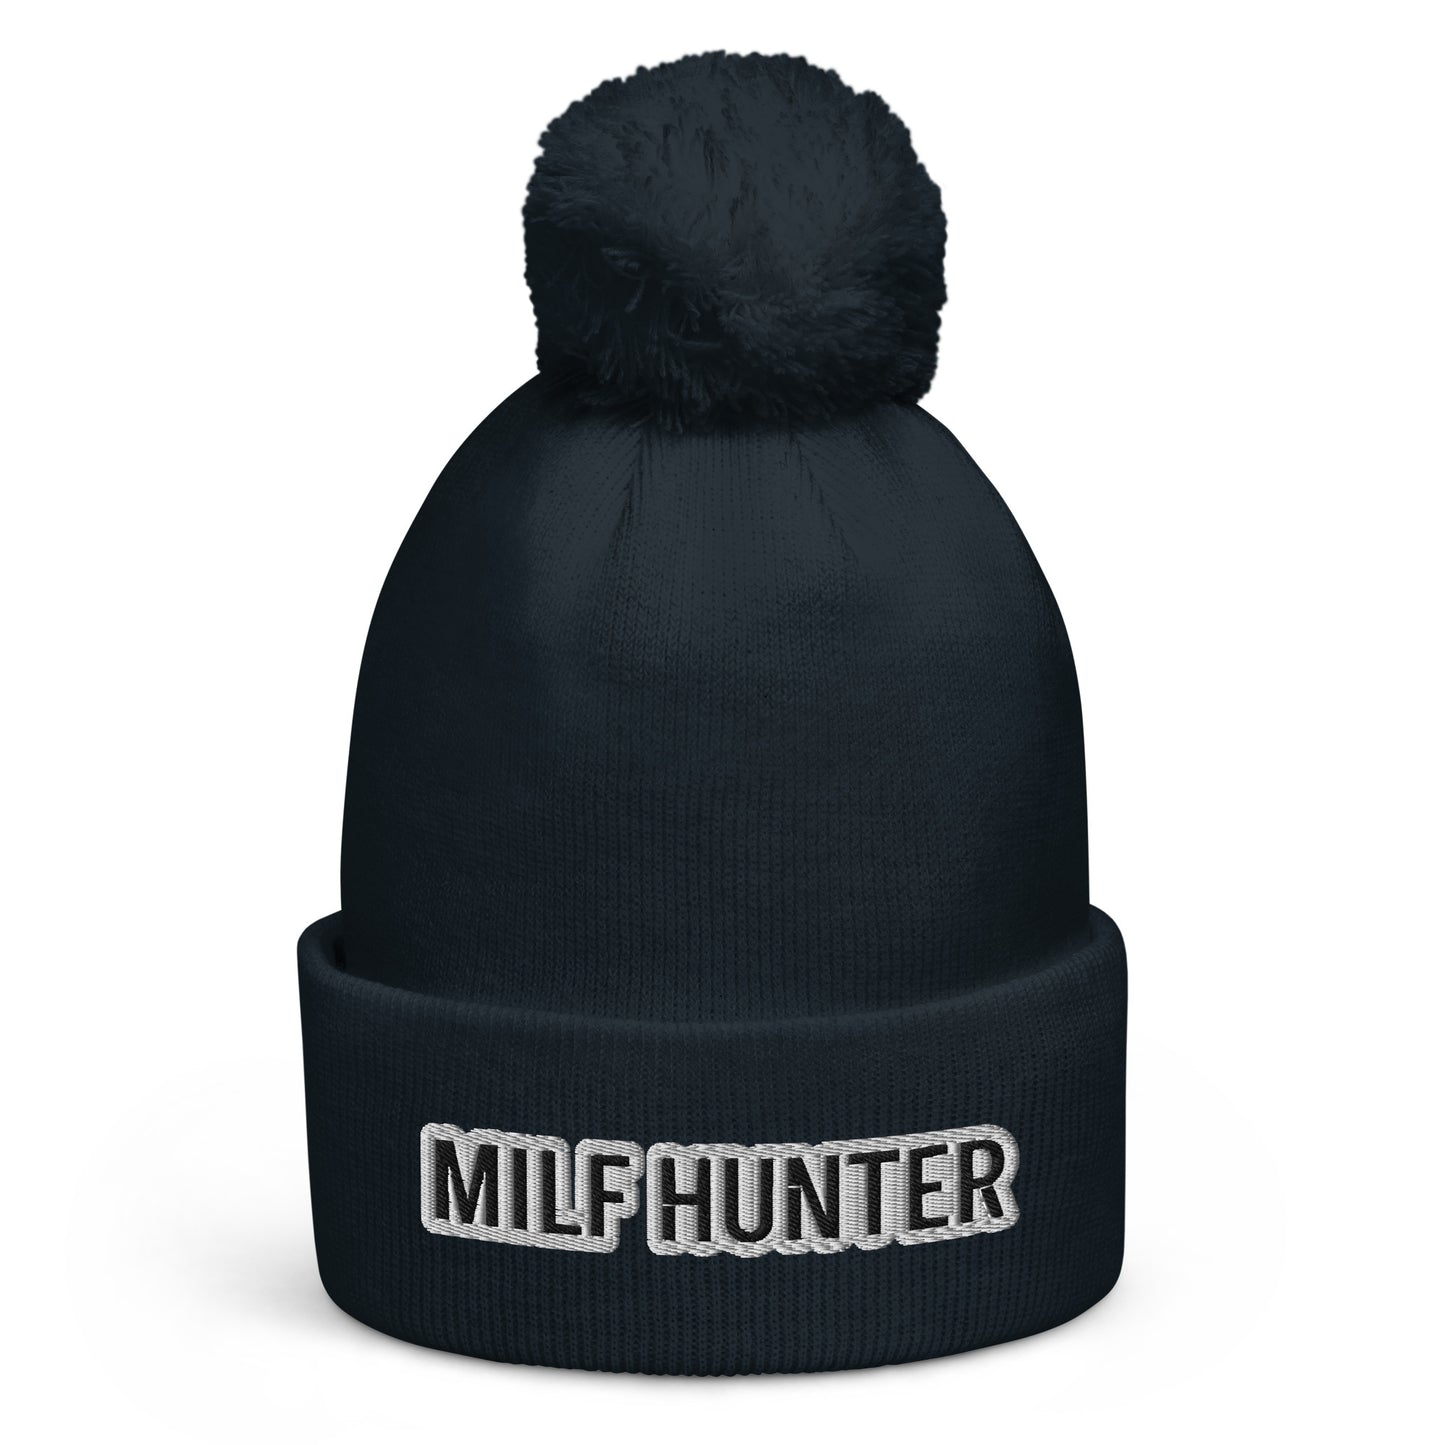 Mütze „Milf Hunter“ mit Quaste SCHWARZER TEXT